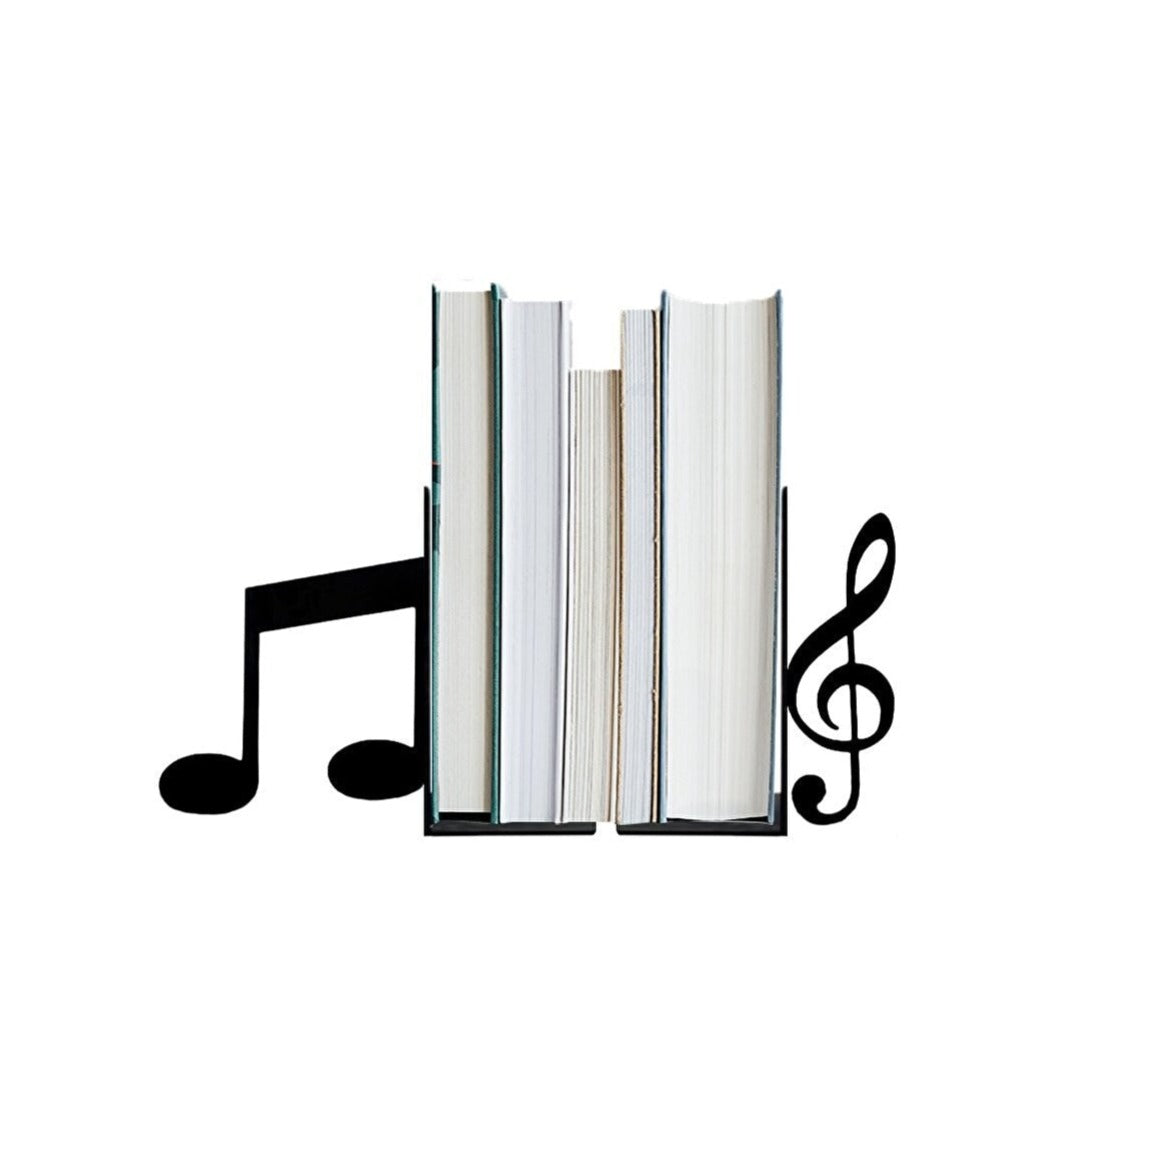 Serre-Livre-Ombre-Musique1serre-livres3256804189609248-Music notes